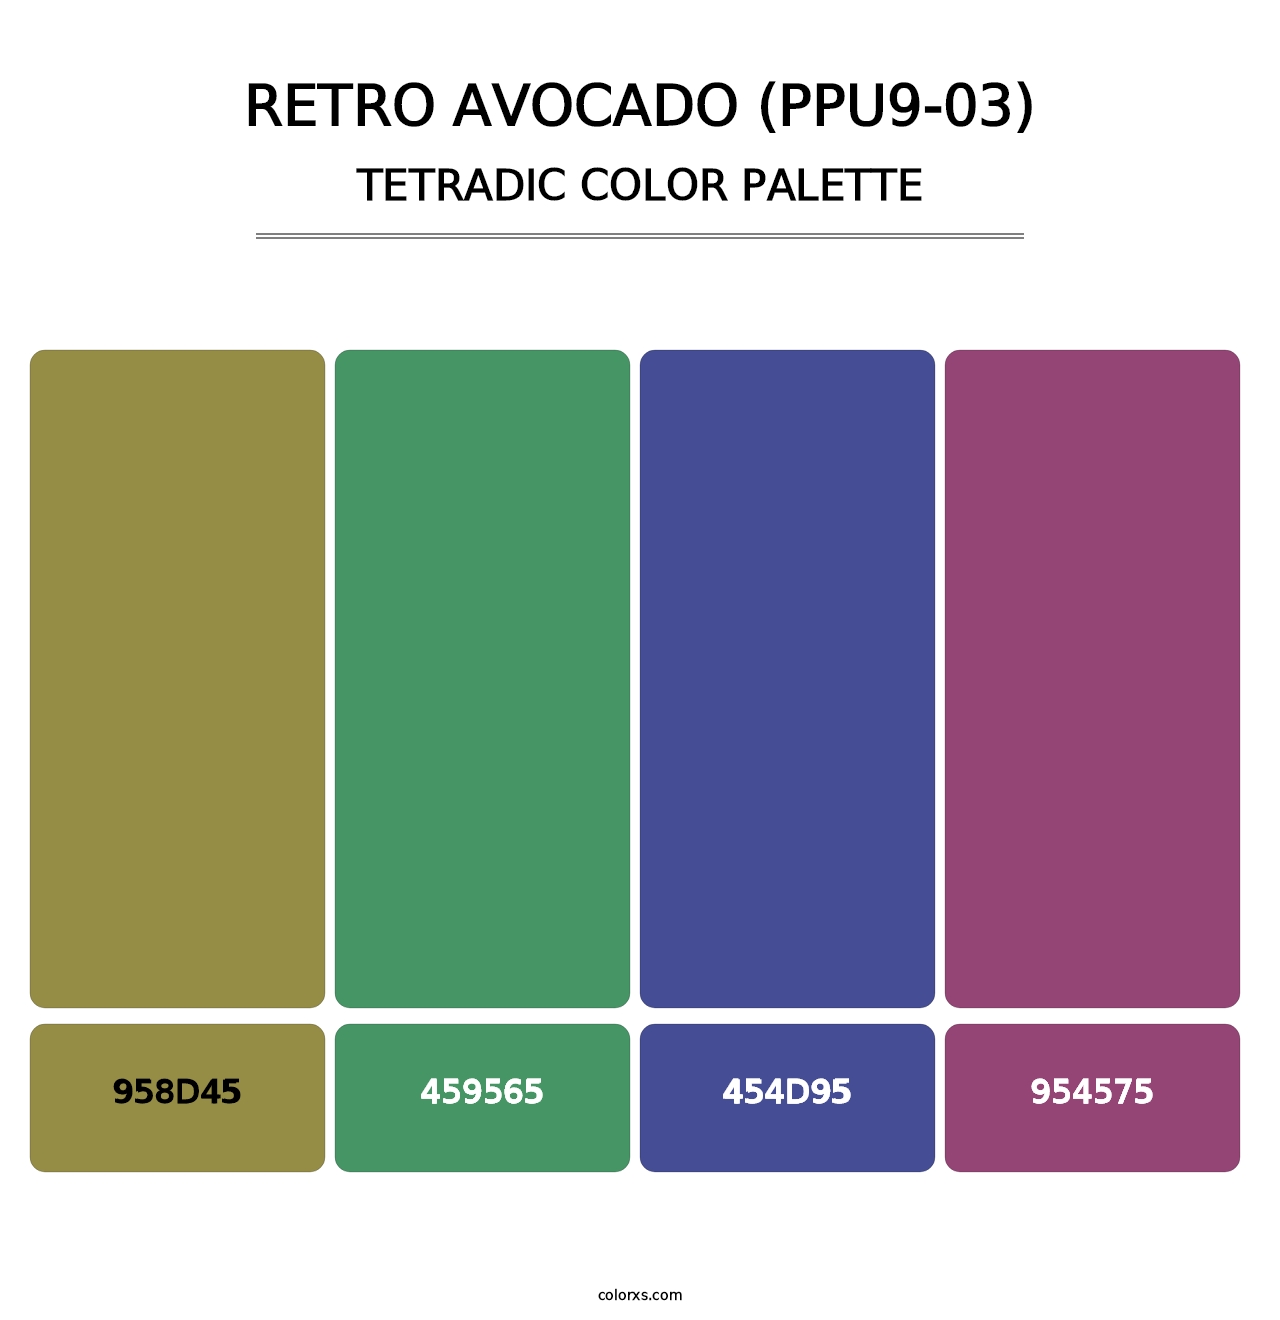 Retro Avocado (PPU9-03) - Tetradic Color Palette